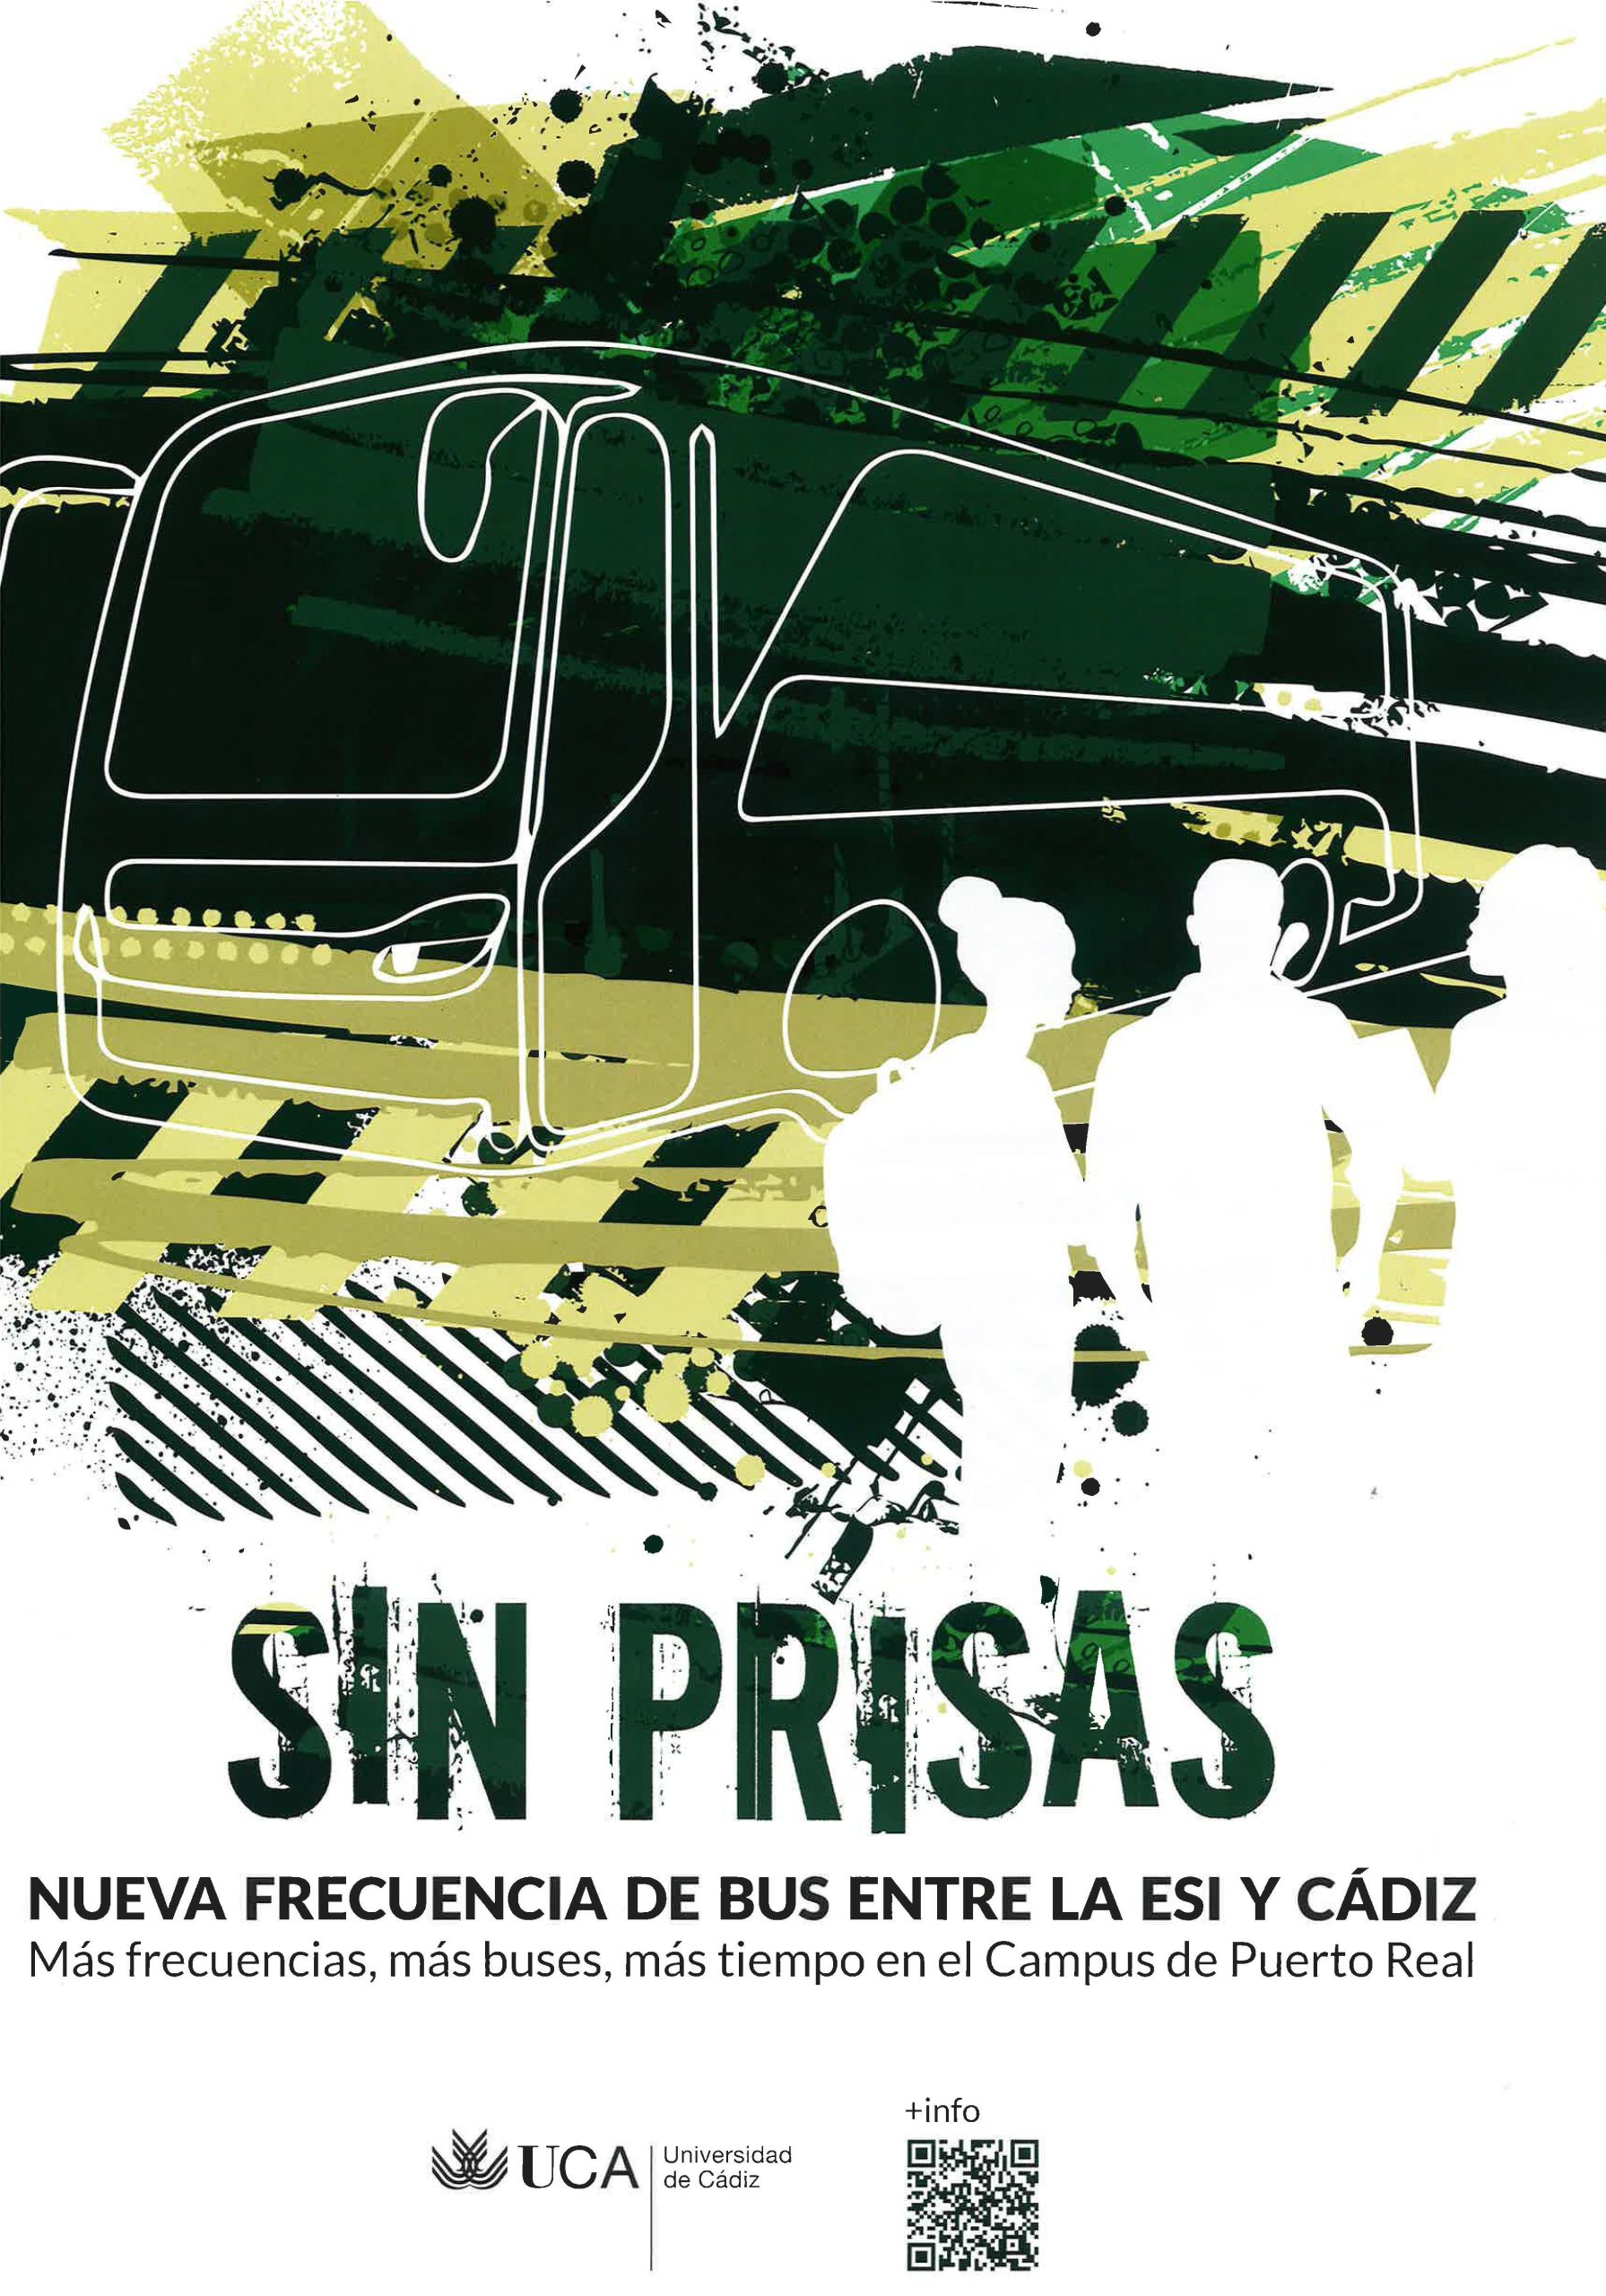 Nueva frecuencia de bus entre la ESI y Cádiz